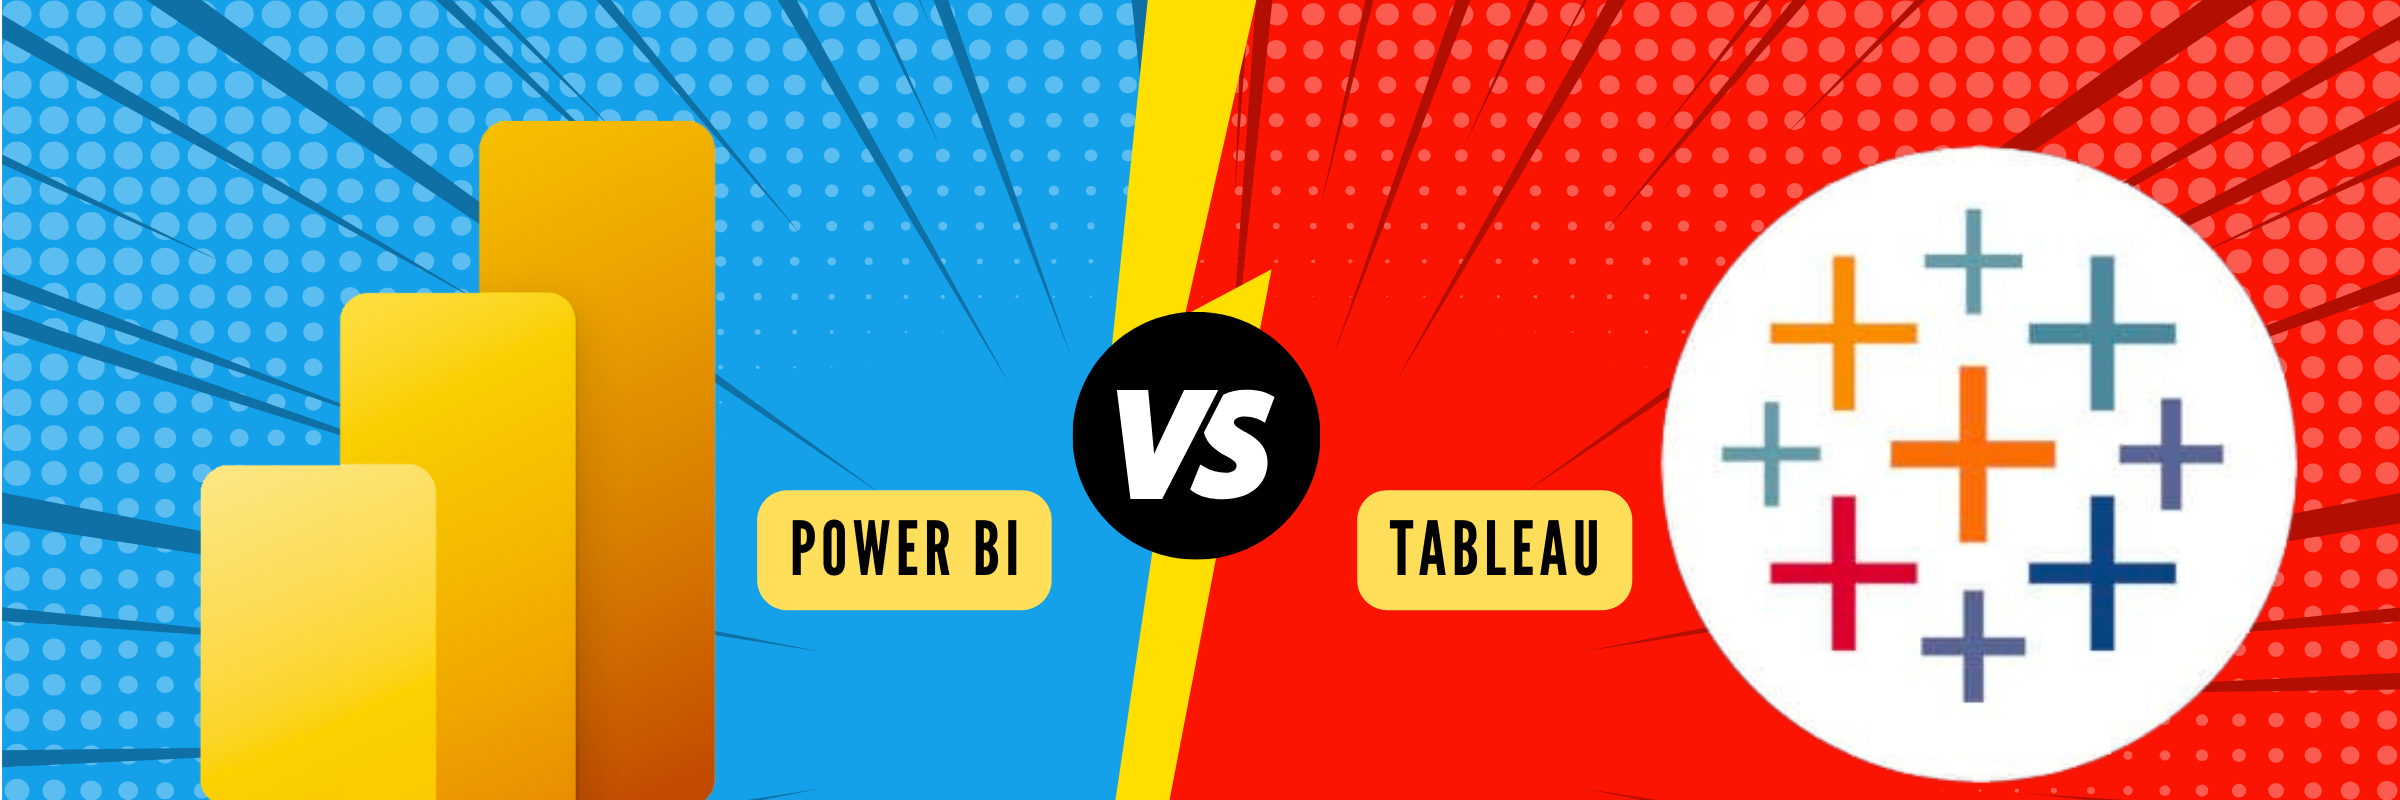 Power BI vs Tableau